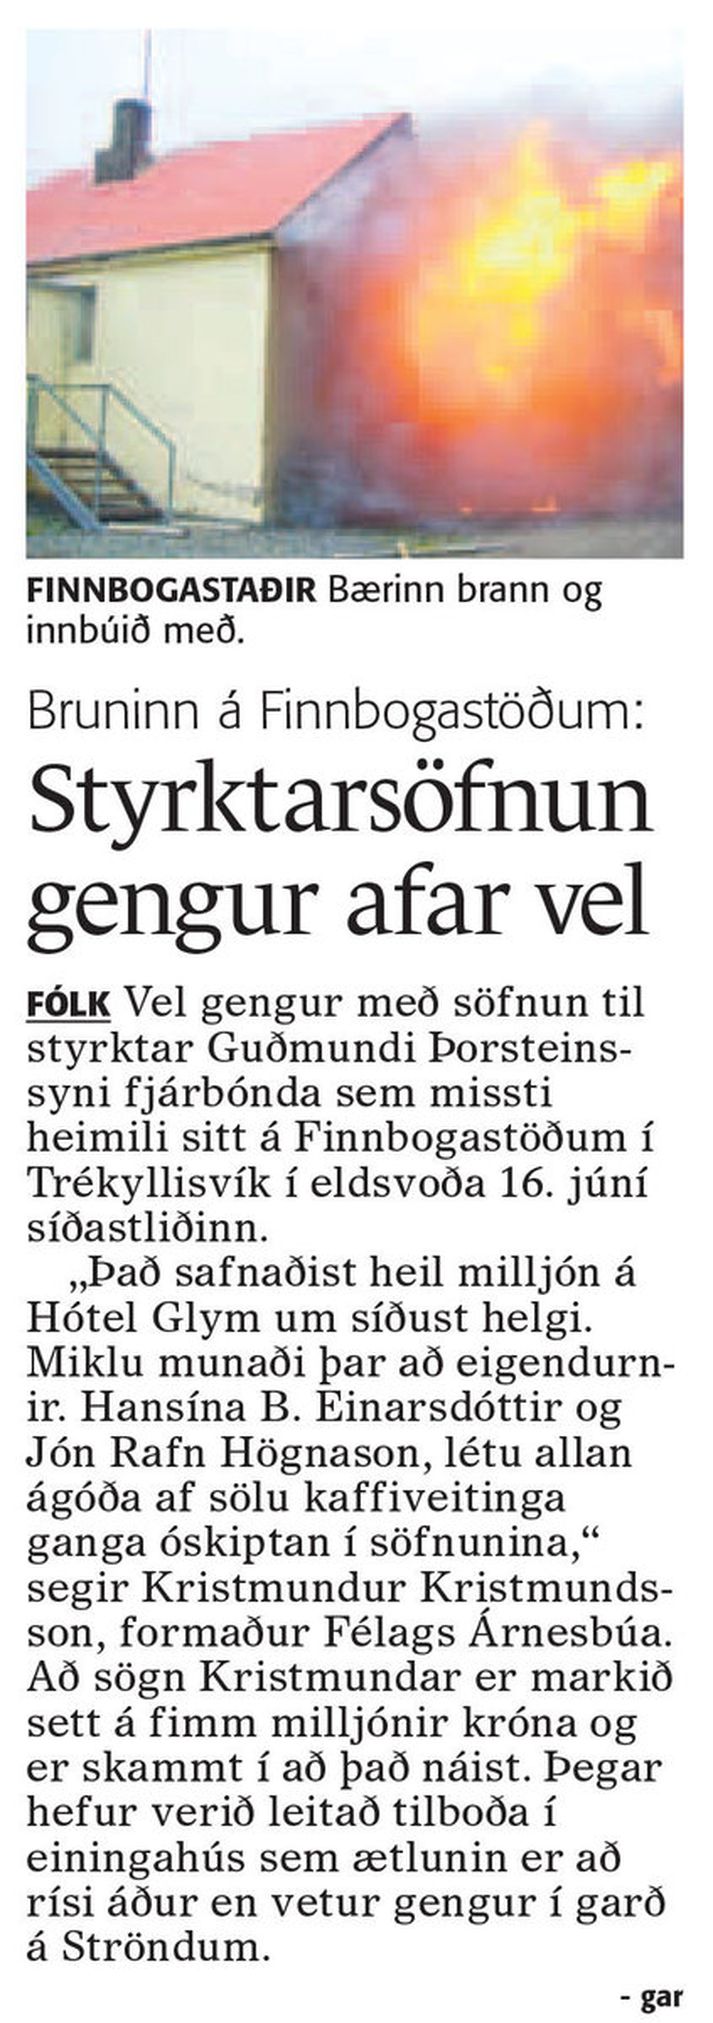 Fréttablaðið sagði 10. júlí 2008 frá söfnun vegna brunans á Finnbogastöðum.